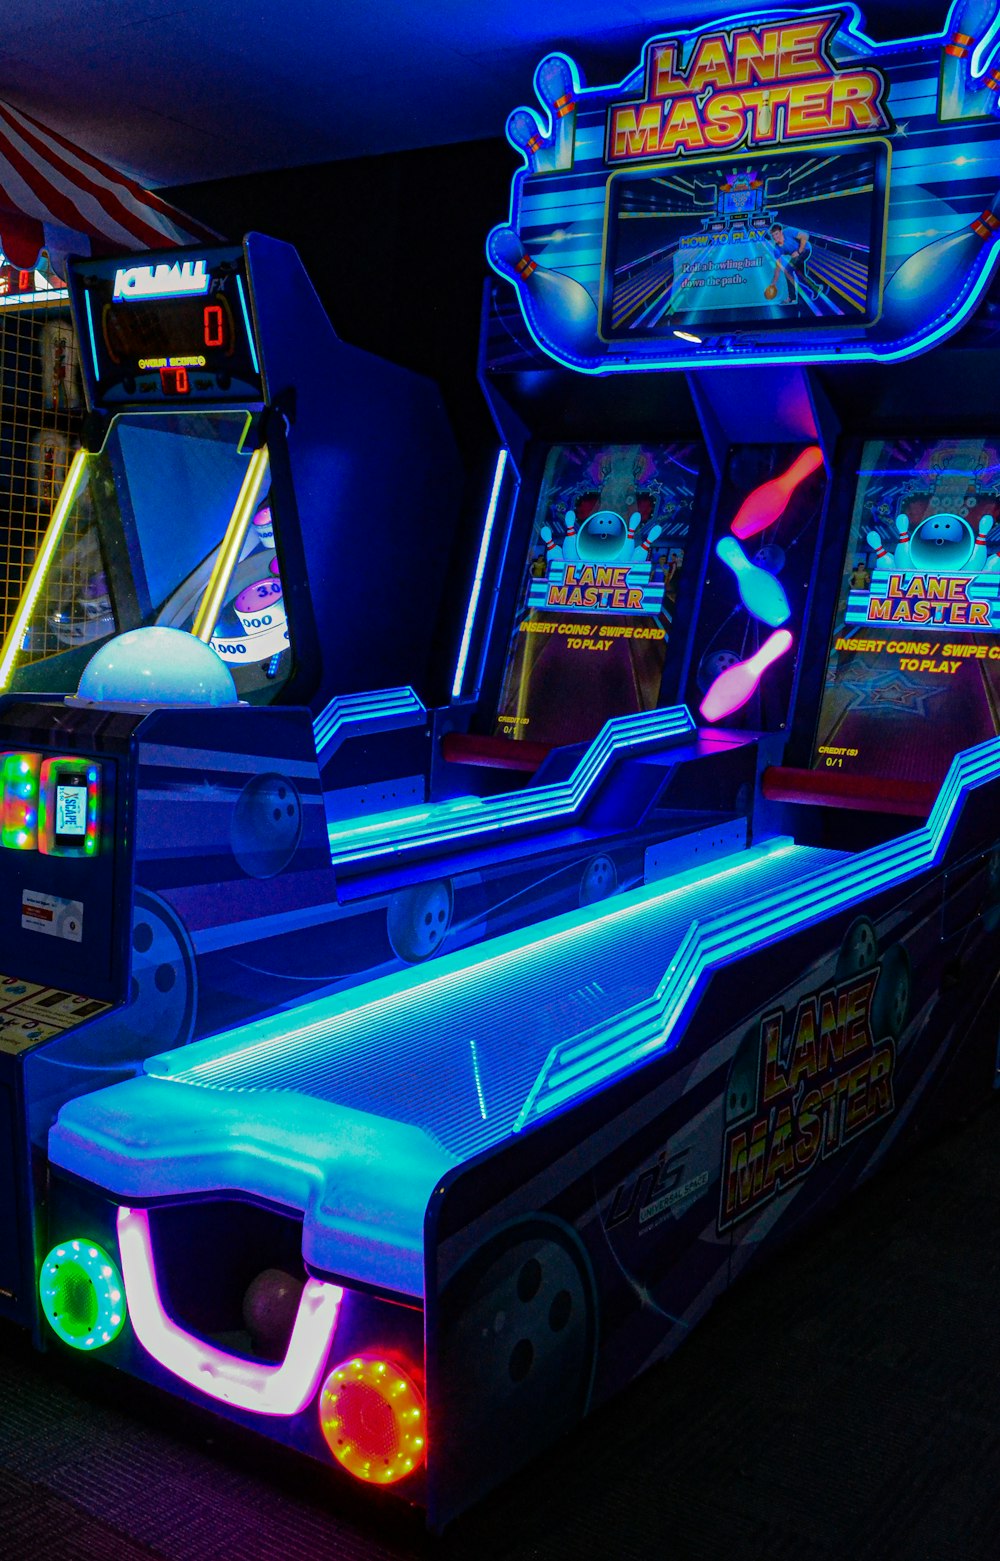 Arcade-Spielautomat mit Licht eingeschaltet